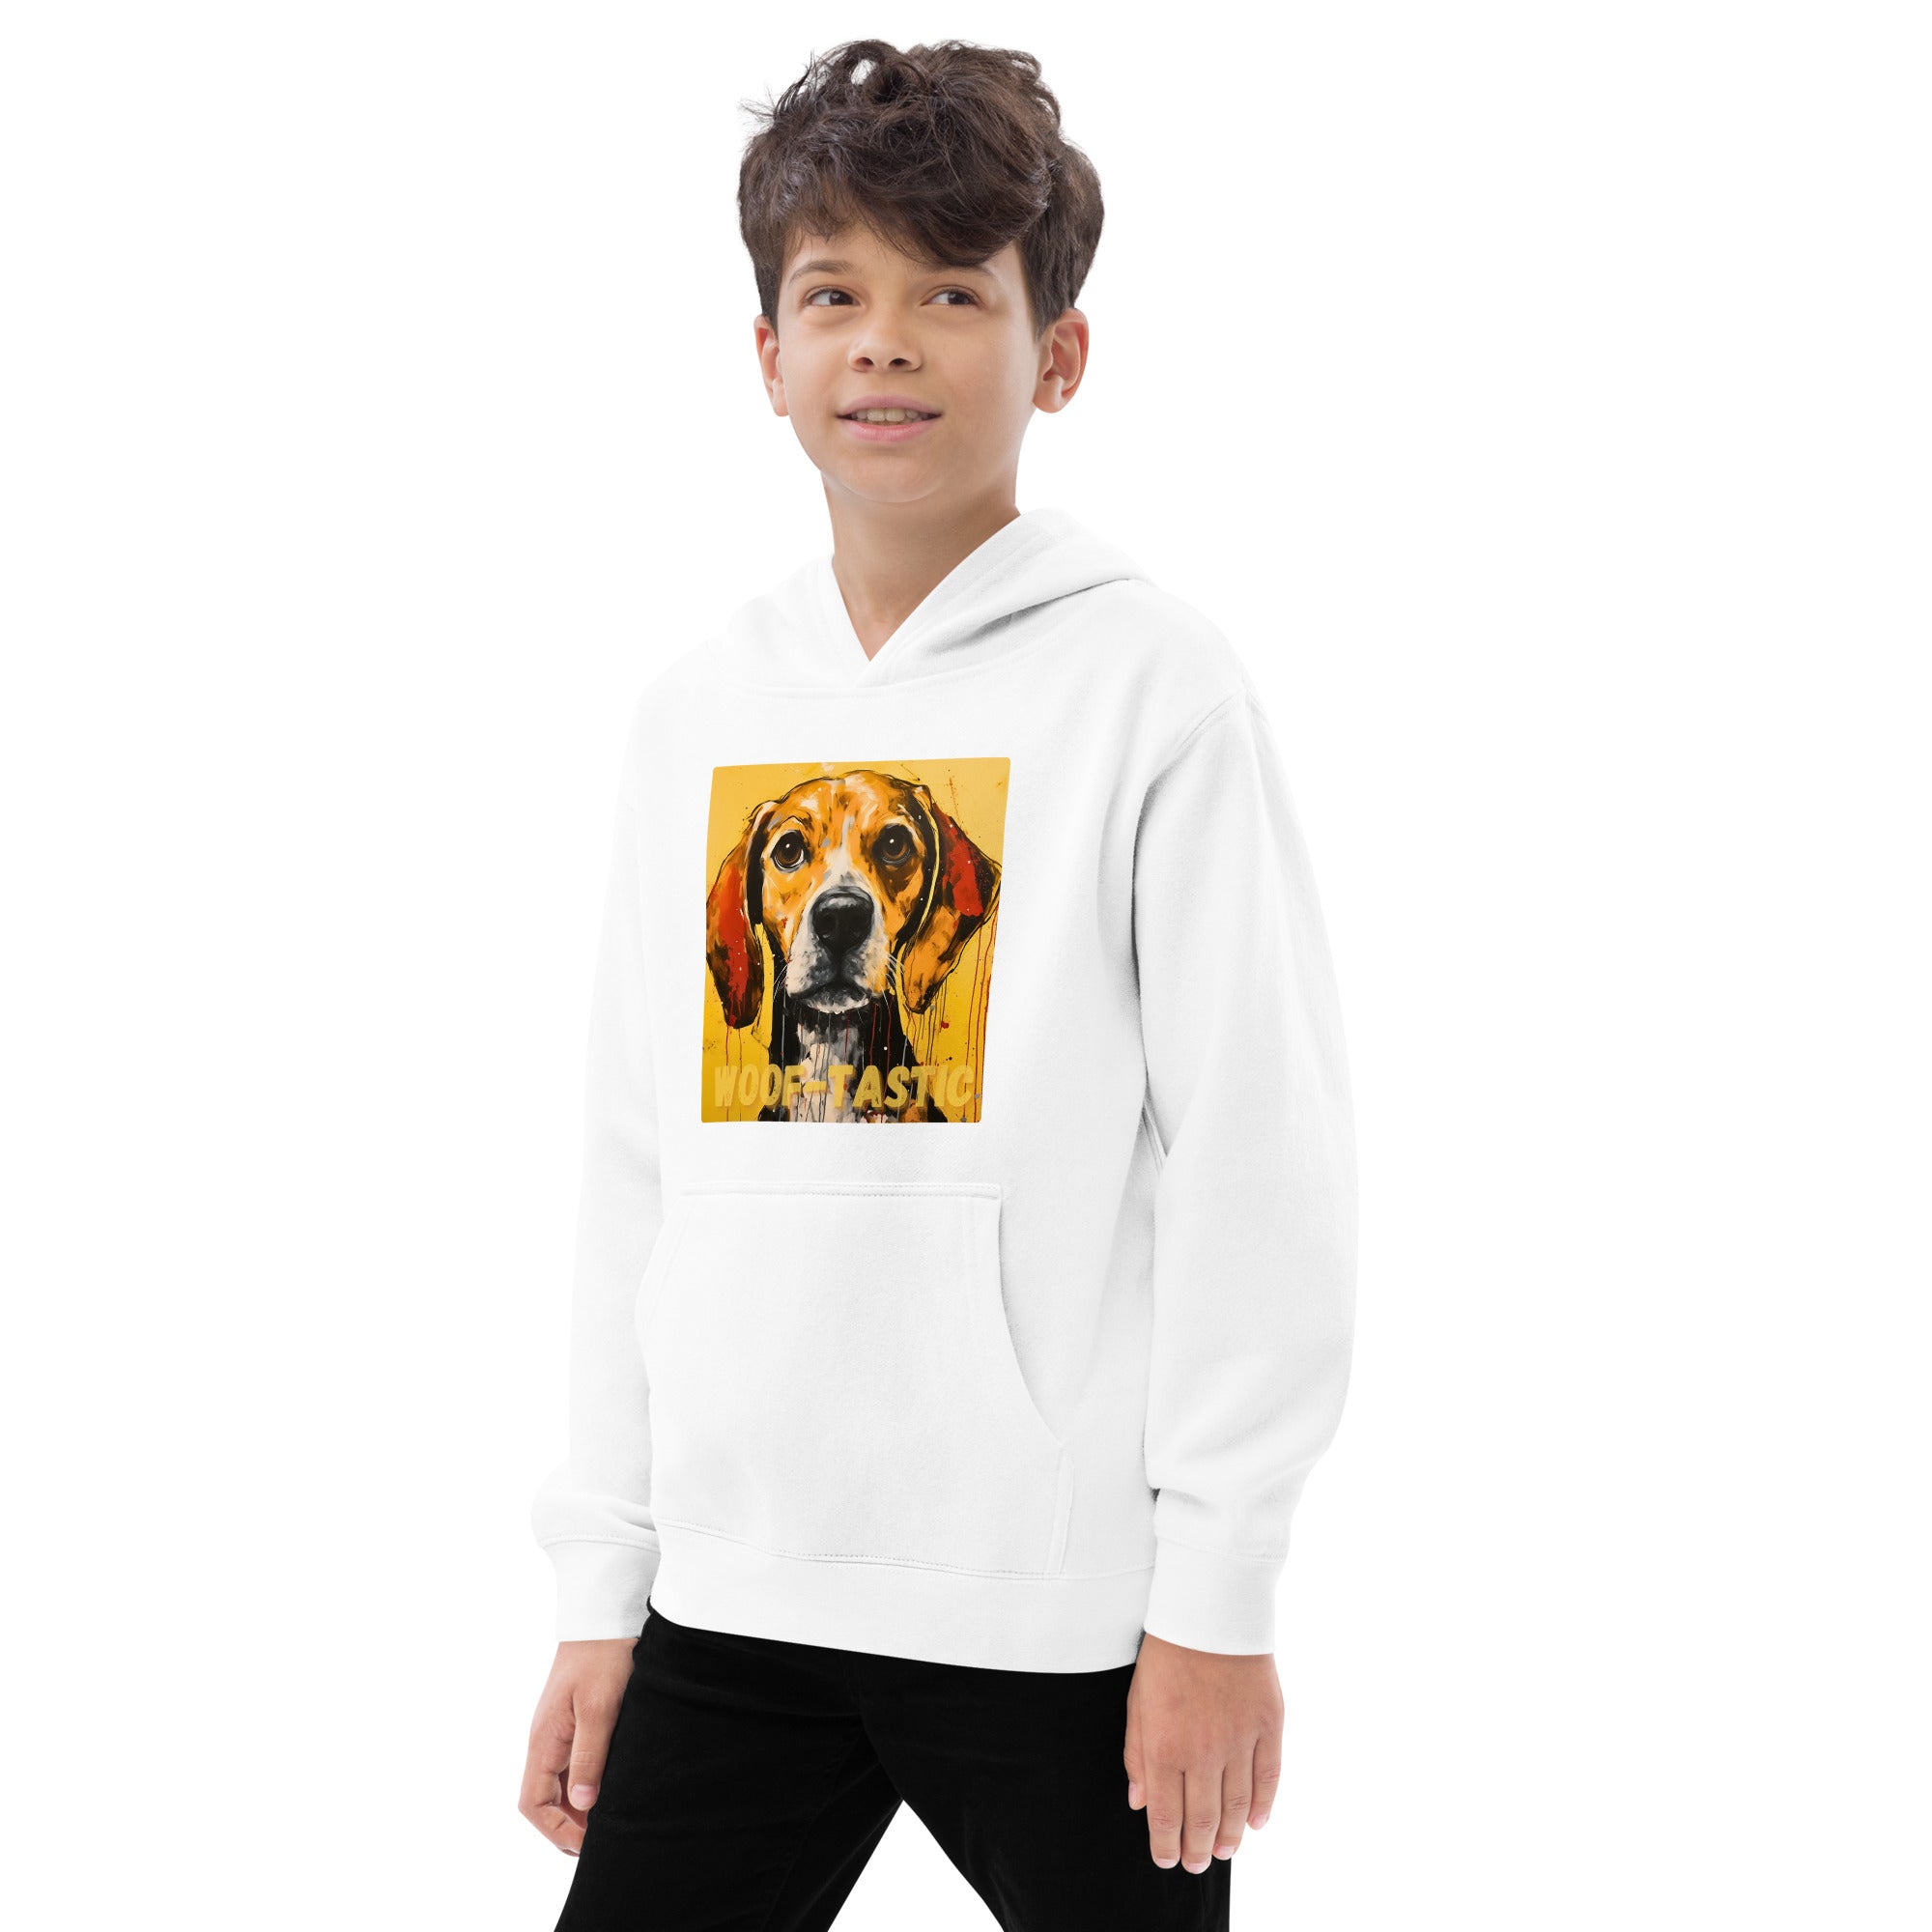 Kids fleece hoodie Woof-tastic Beagle